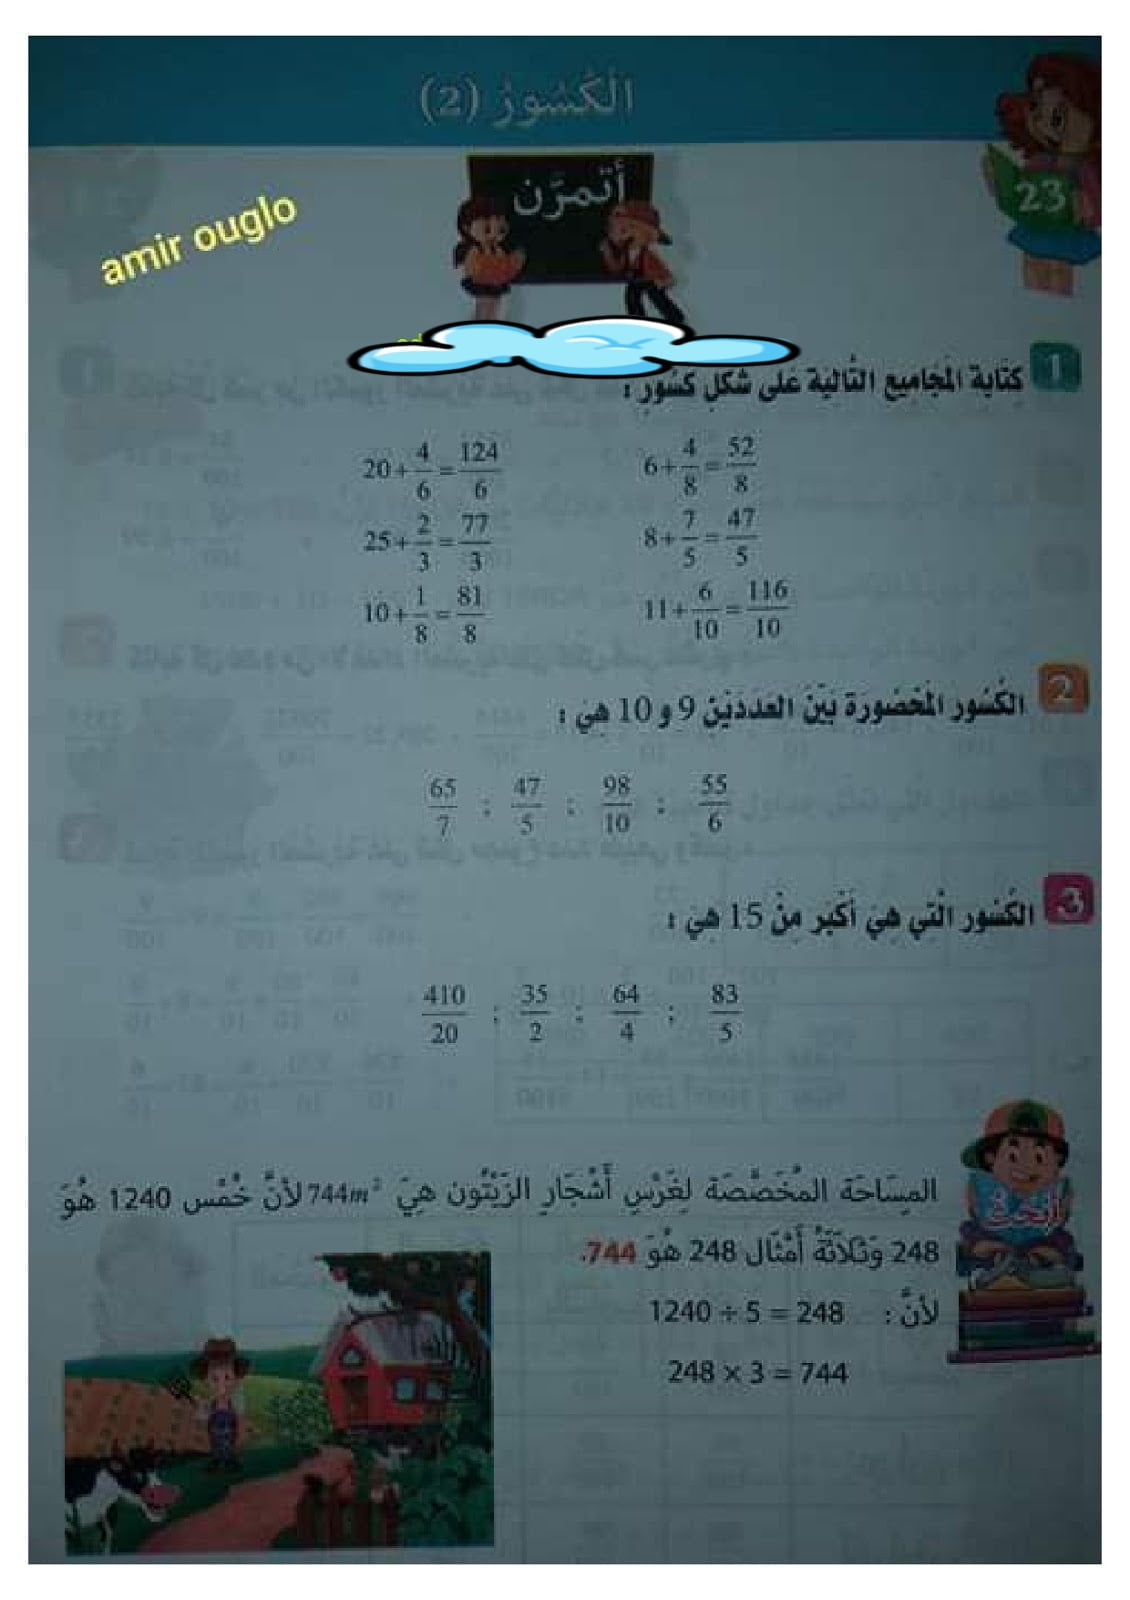 حلول تمارين صفحة 23 من كراس النشاطات في مادة الرياضيات للسنة الخامسة ابتدائي - الجيل الثاني 1